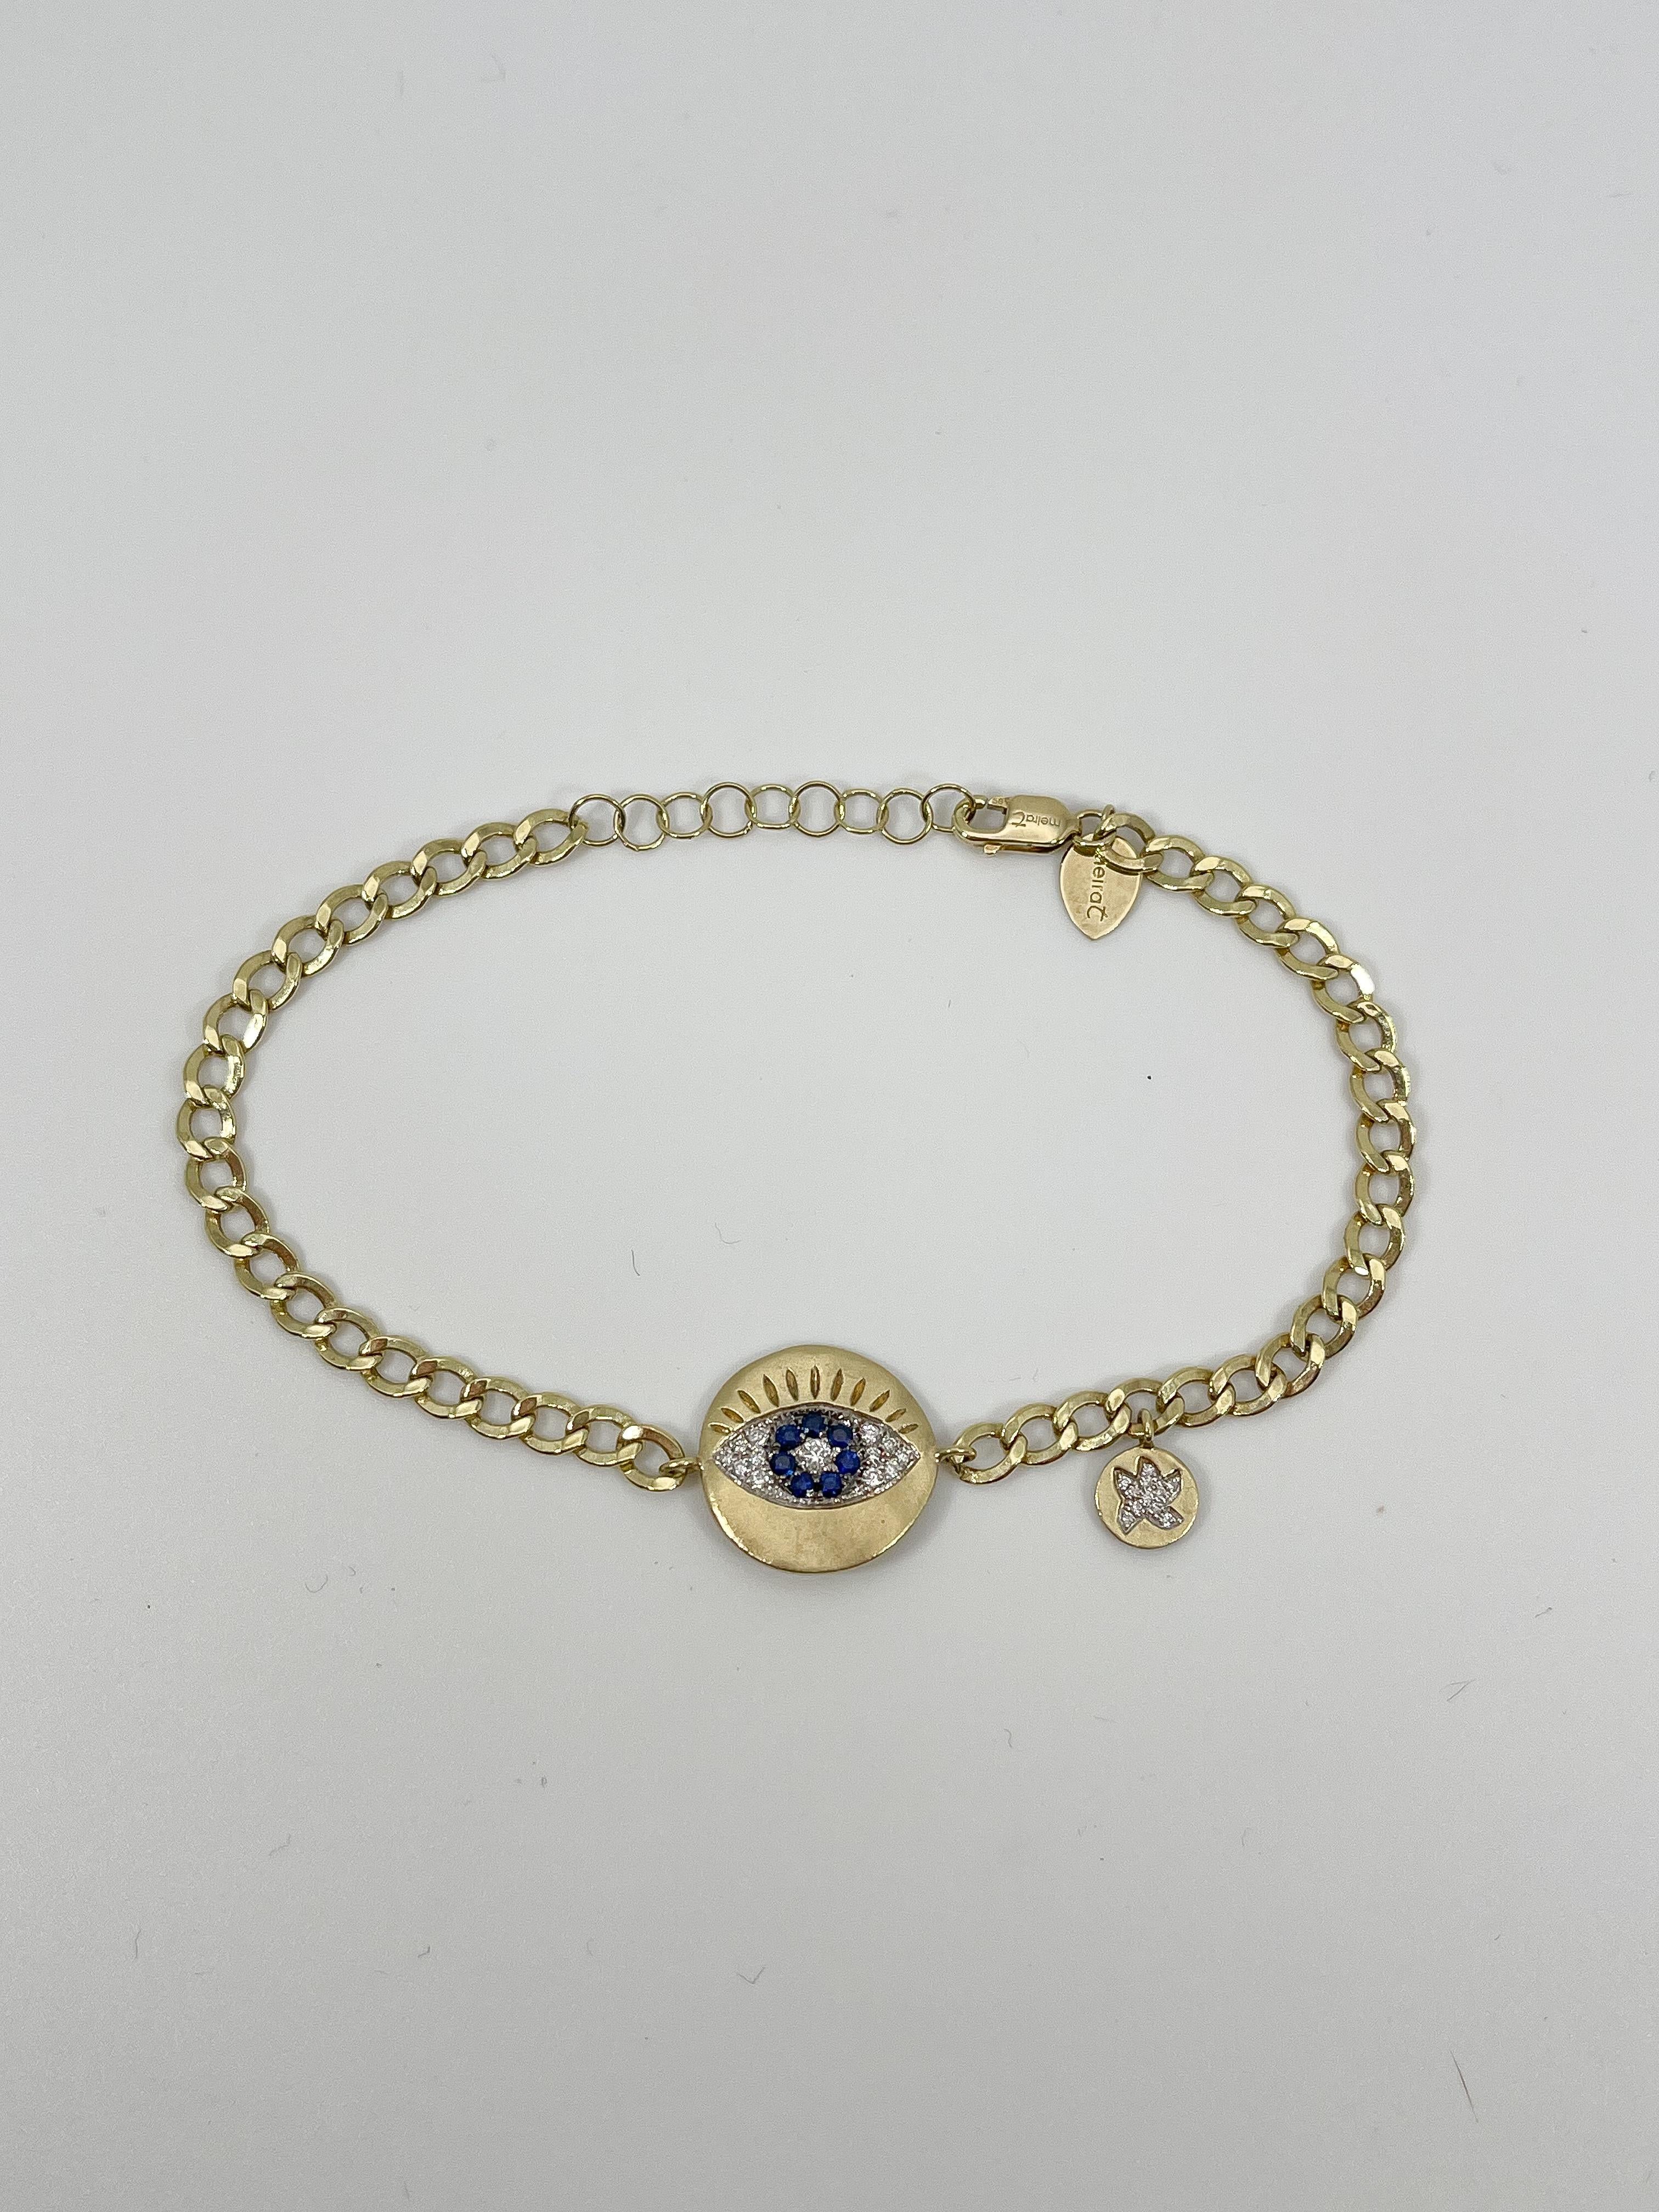 Bracelet mauvais œil en or jaune 14k, diamant et saphir. Toutes les pierres de ce bracelet sont rondes, le mauvais œil mesure 13,5 mm de diamètre, le bracelet a un charme stationné avec des diamants sur le côté du mauvais œil, le bracelet mesure 7